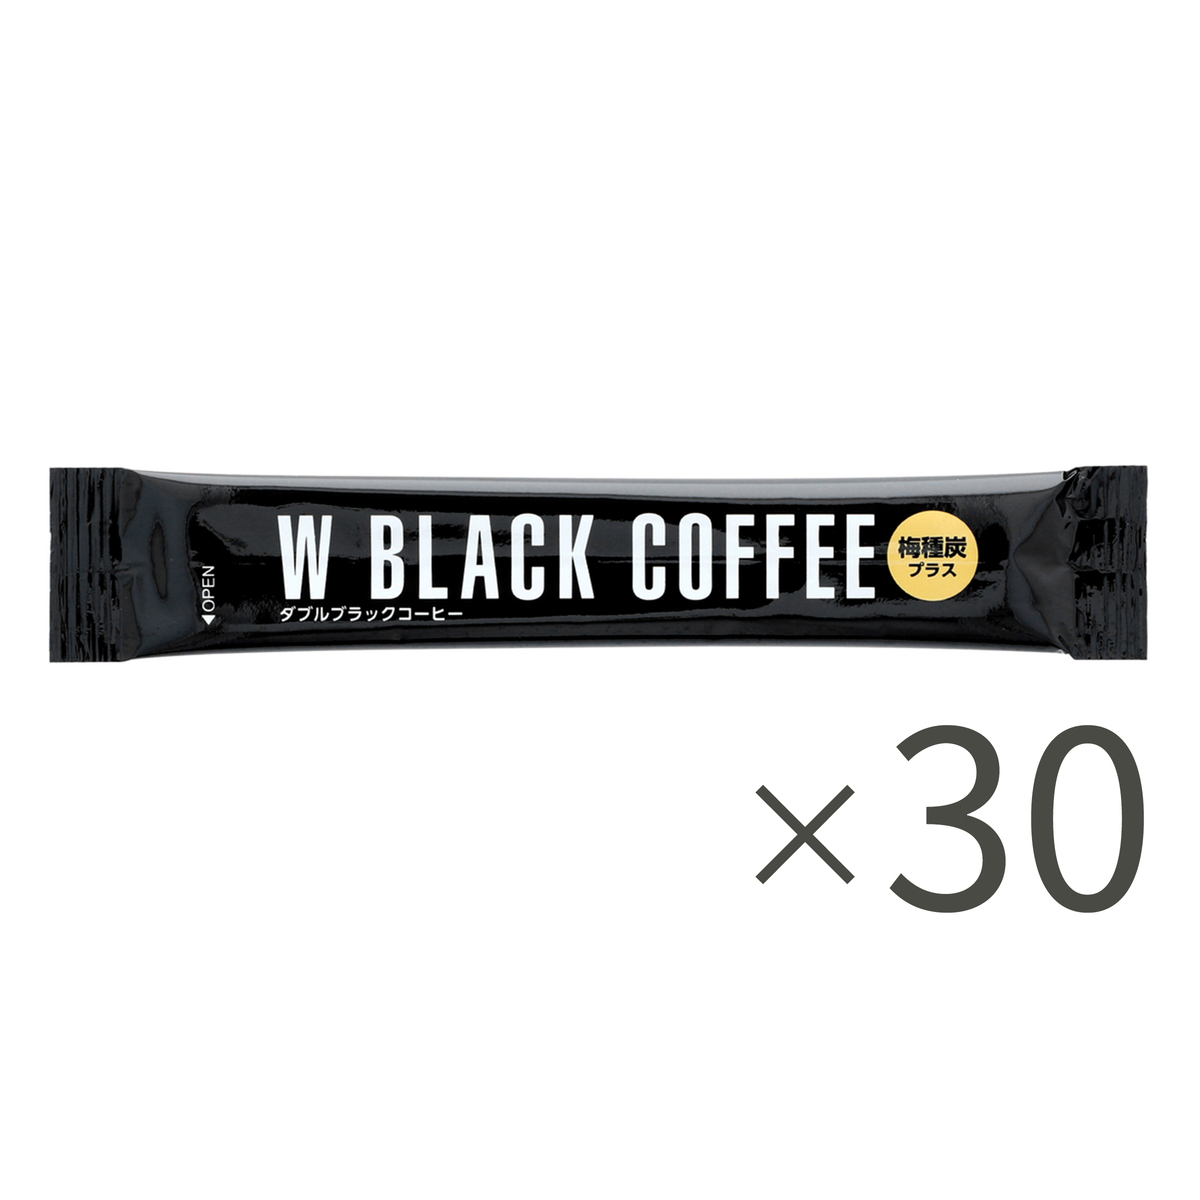 機能性表示食品 Wブラックコーヒー 30日分 ウェルスマイル（Well smile 